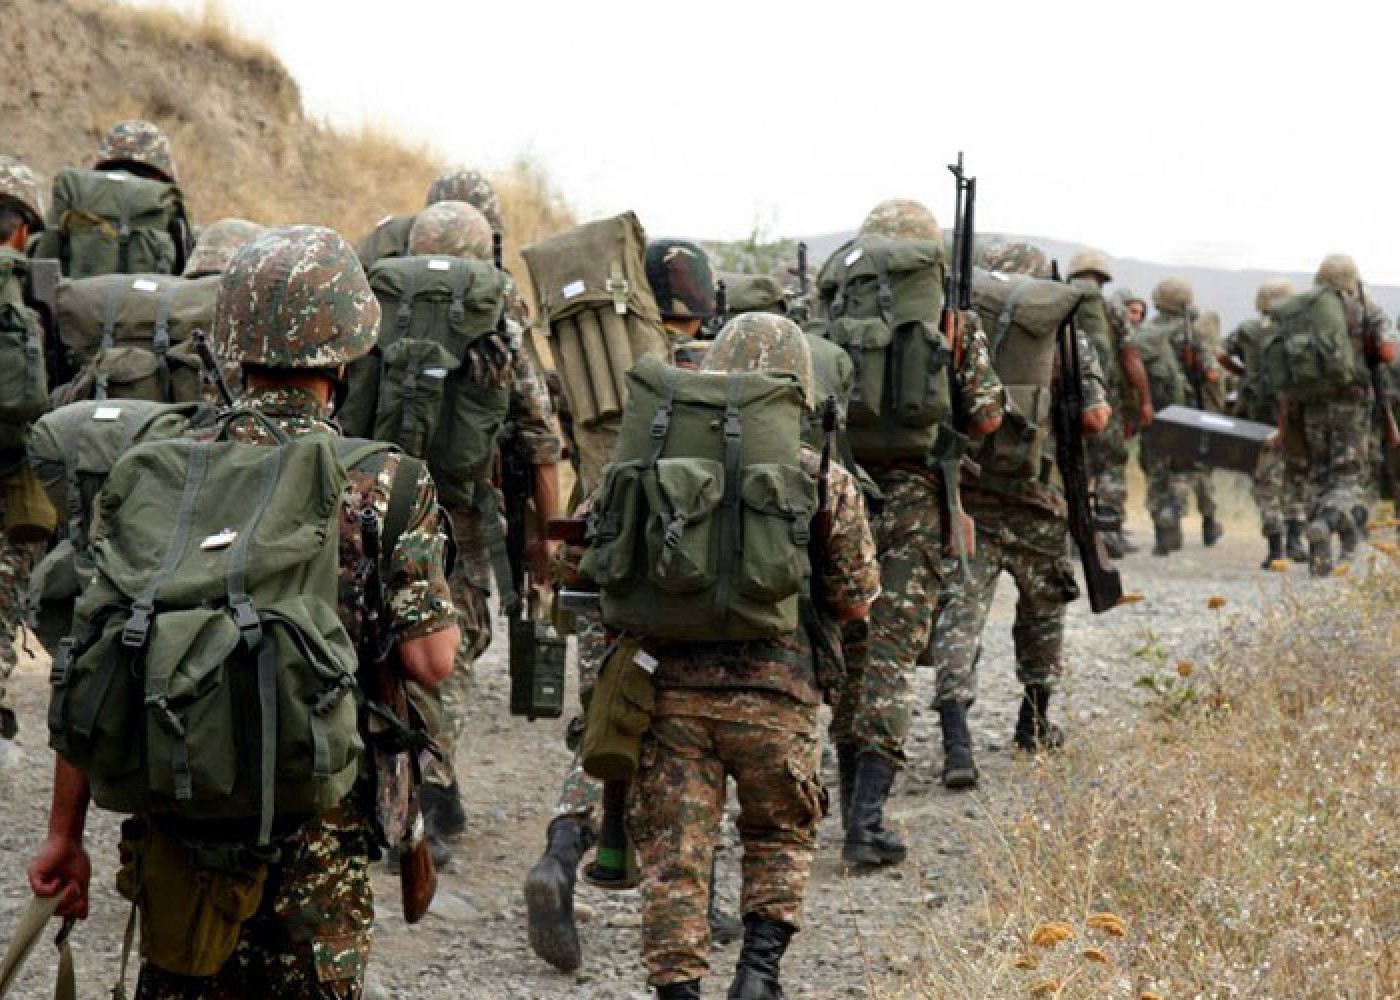 Ermənistan ordusu Qazaxın kəndlərindən geri çəkildi 